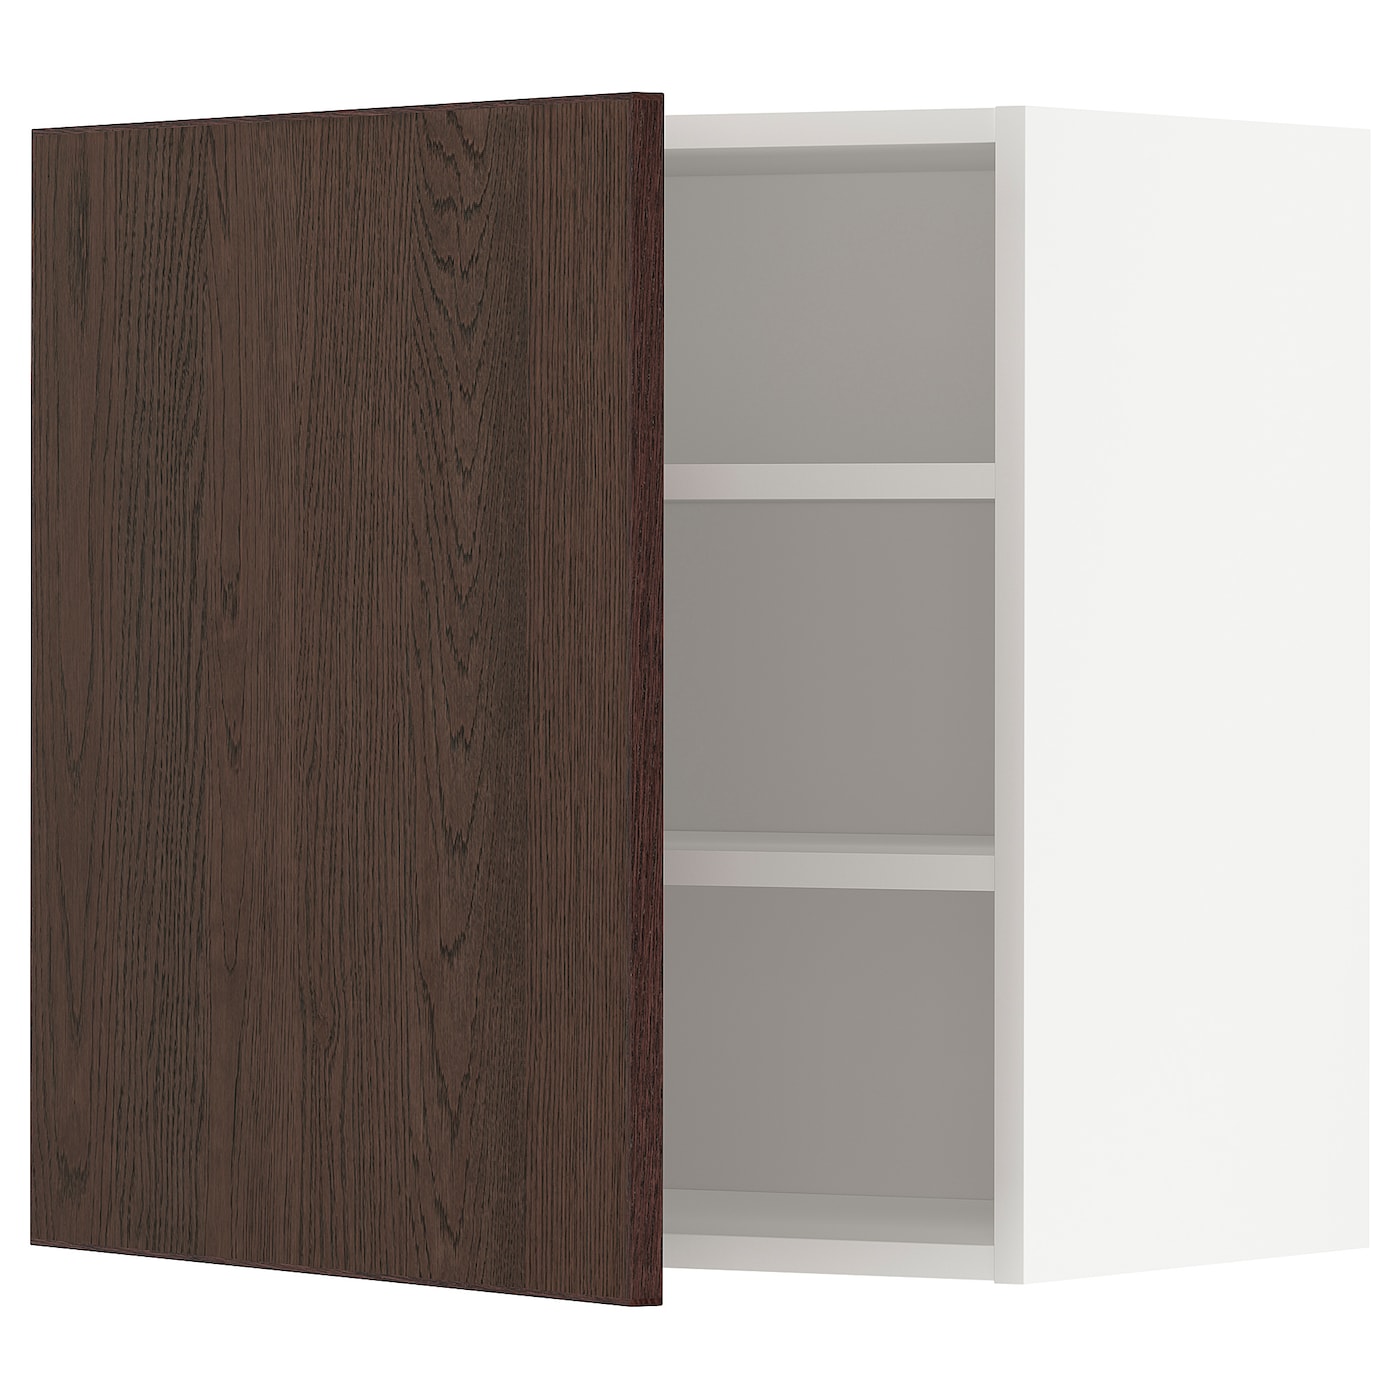 Навесной шкаф с полкой - METOD IKEA/ МЕТОД ИКЕА, 60х60 см, белый/коричневый